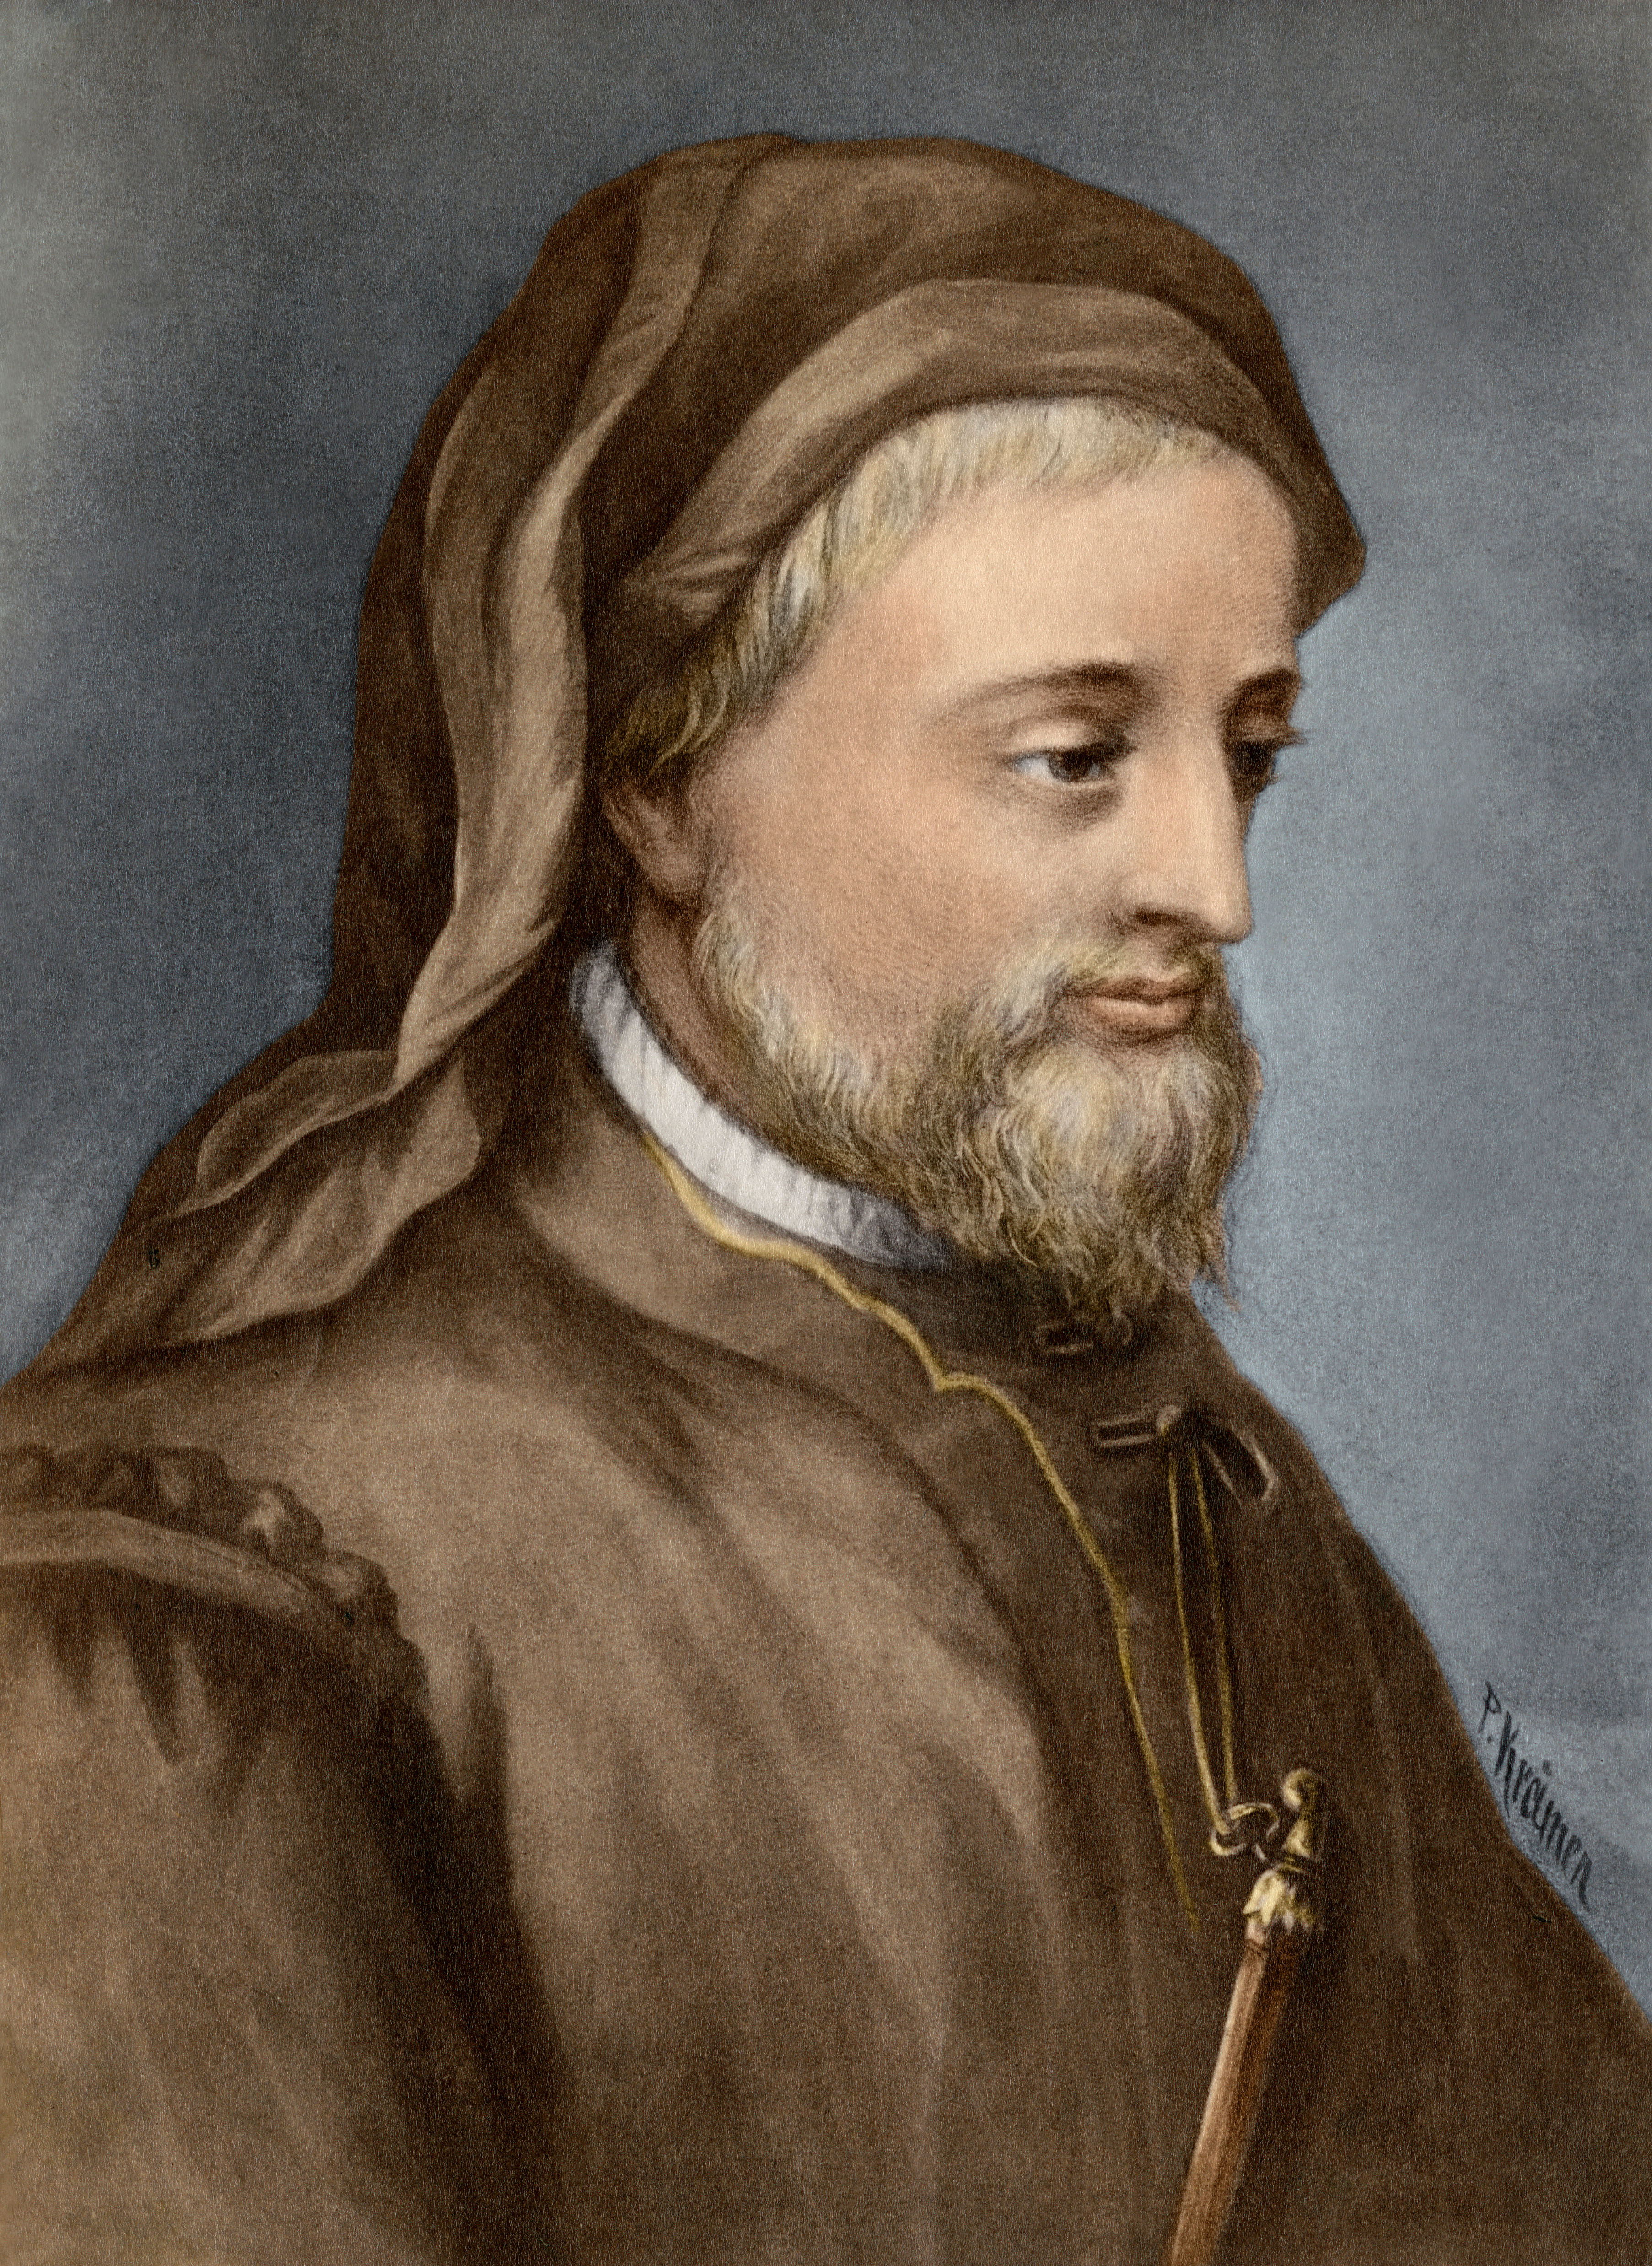 Der englische Dichter Geoffrey Chaucer schrieb die vierundzwanzig Geschichten, aus denen die Canterbury Tales bestehen